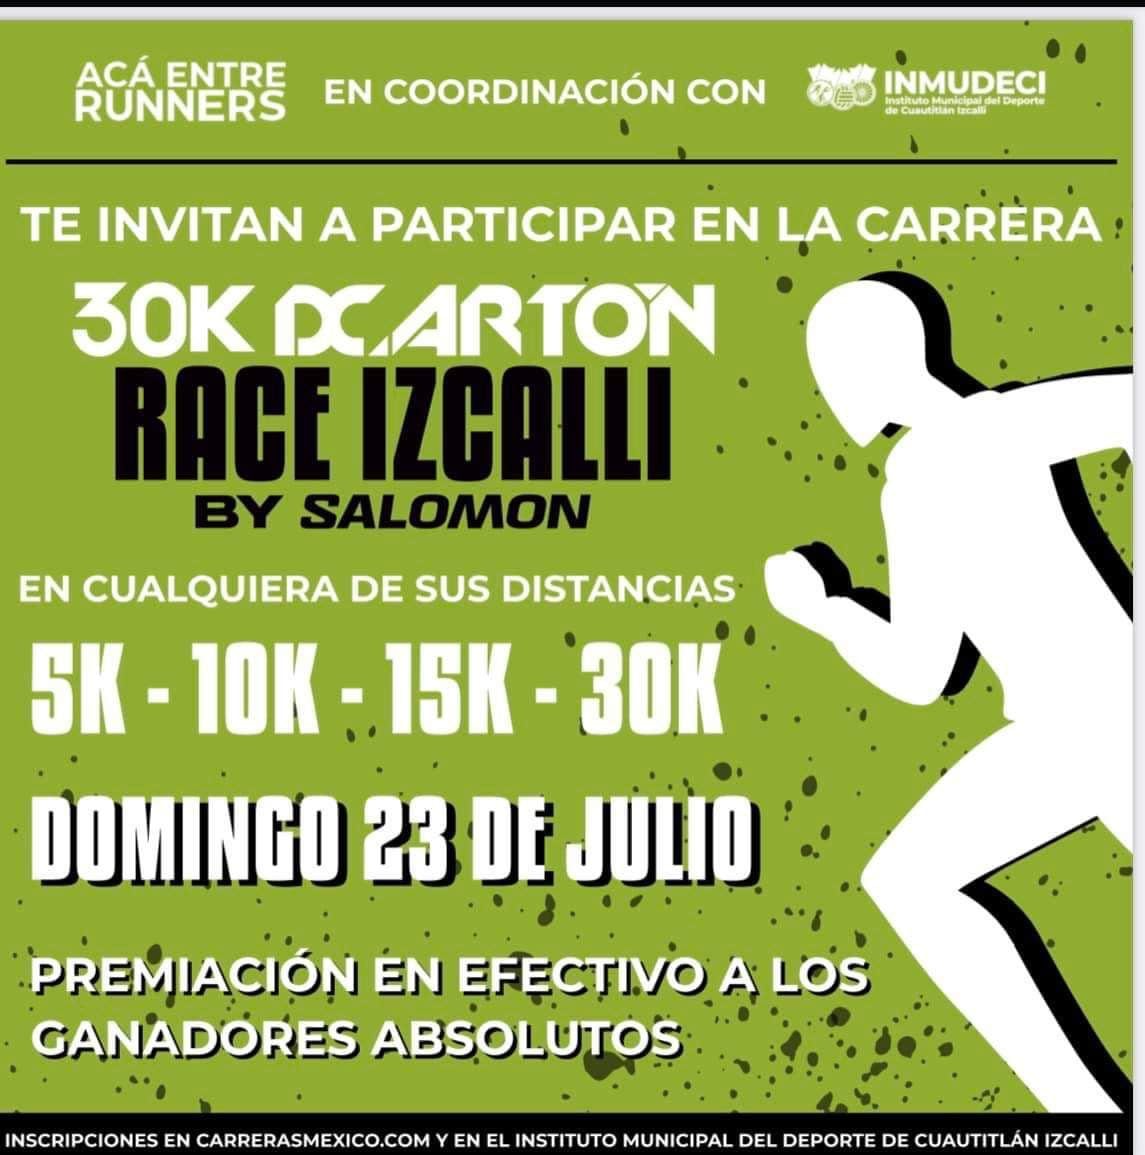 Invitación a 30K DCARTÓN RACE IZCALLI by SALOMON